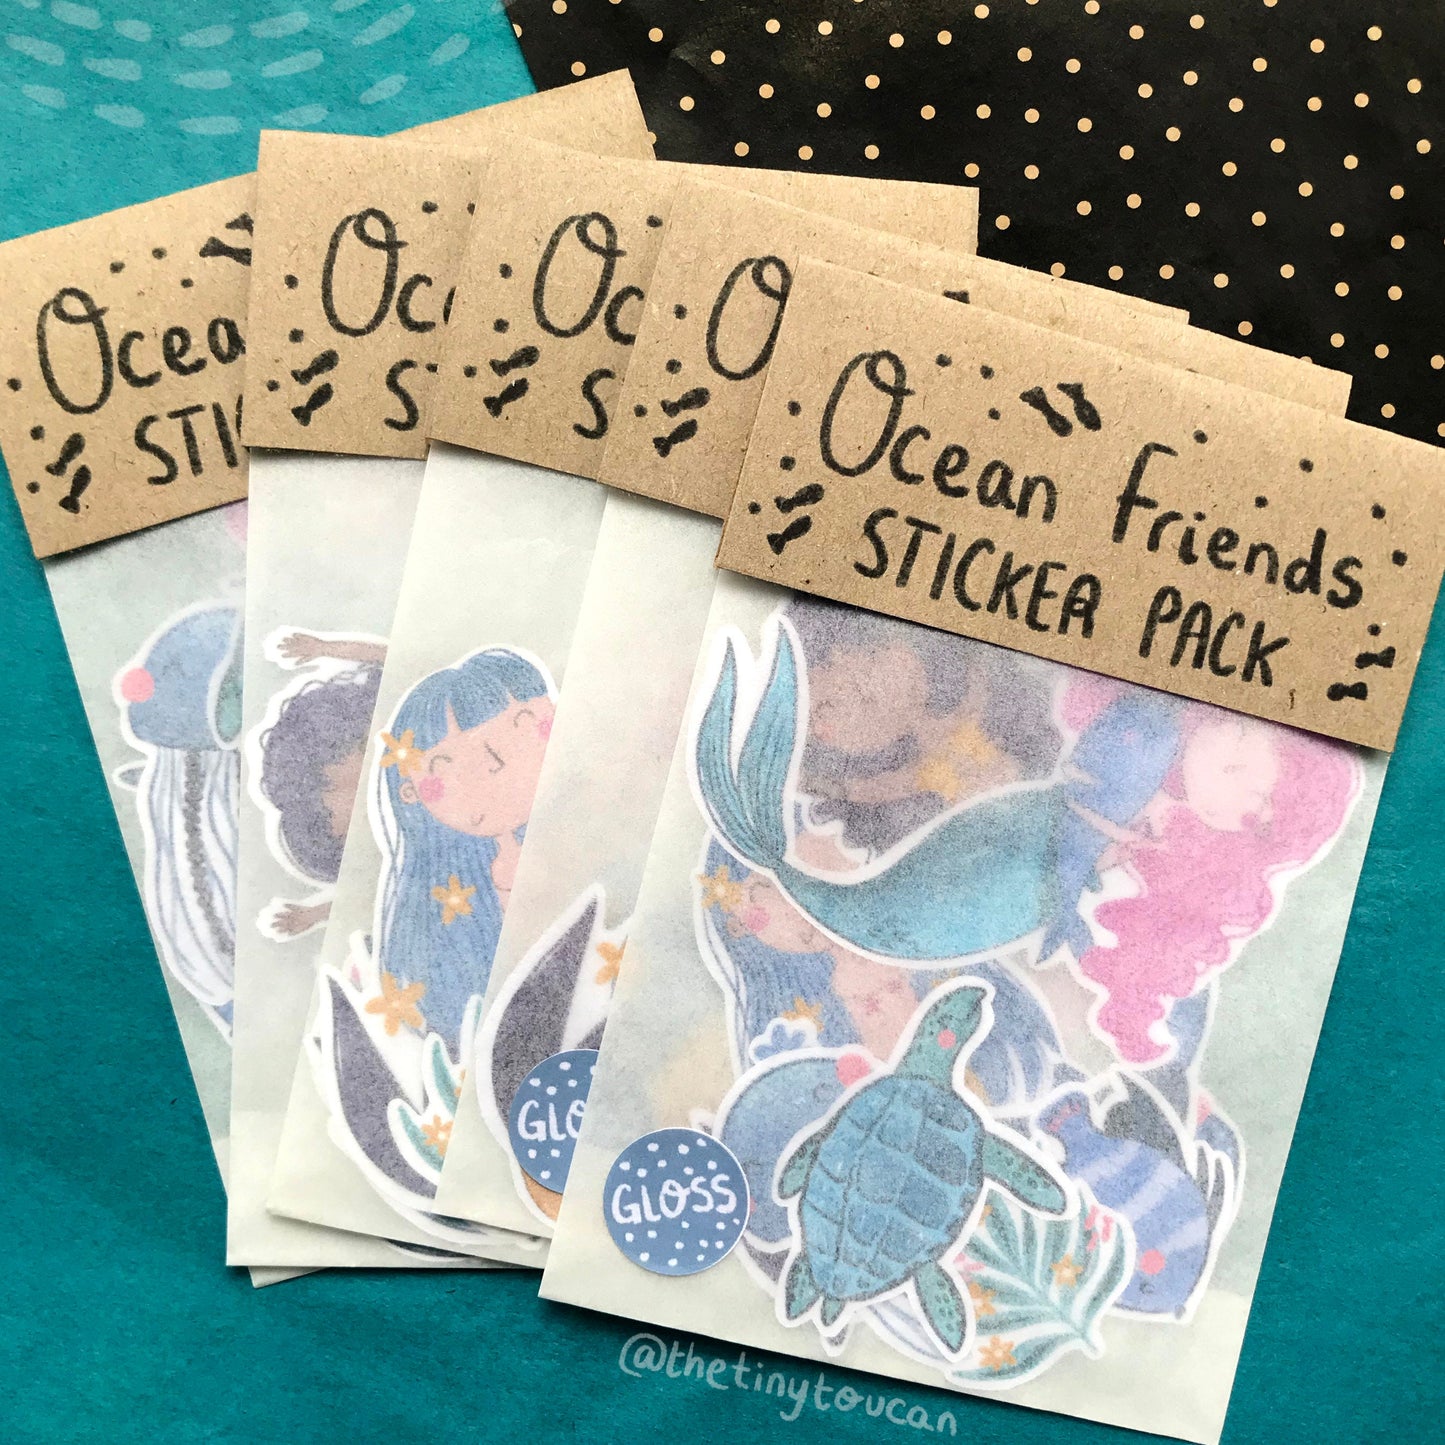 Ocean Friends Sticker Pack!  (3 Mermaids, jellyfish, turtle, fish, whale tech stickers, laptop sticker, cute) Waterproof